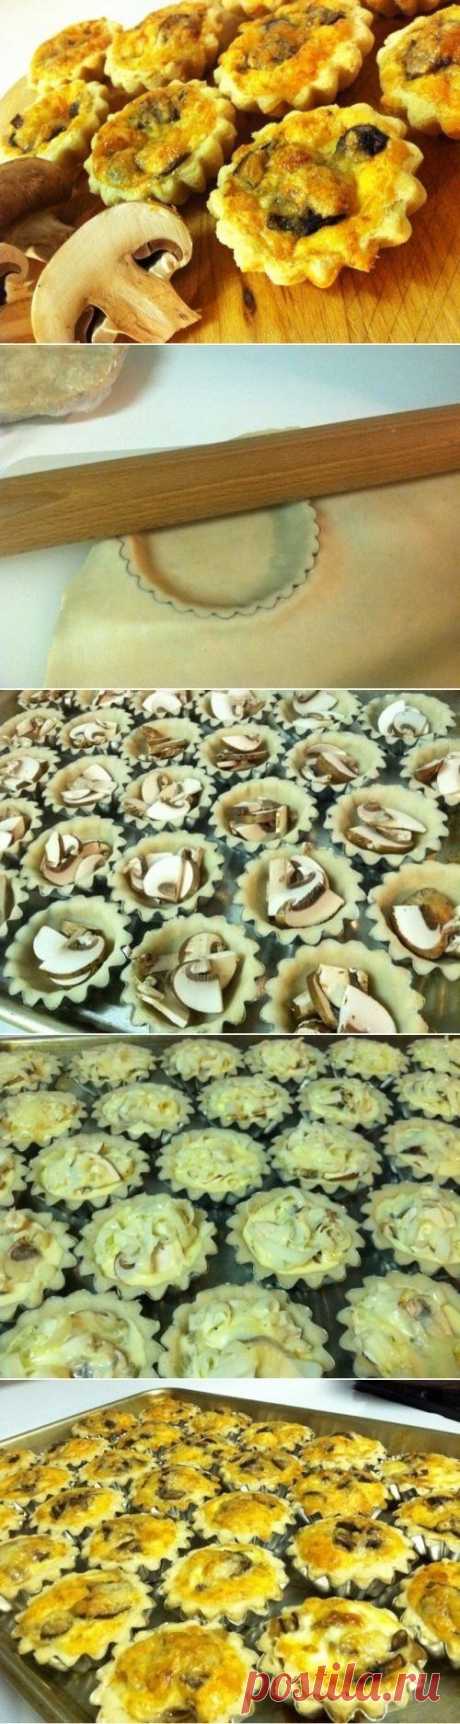 Как приготовить грибные тарталетки - рецепт, ингридиенты и фотографии